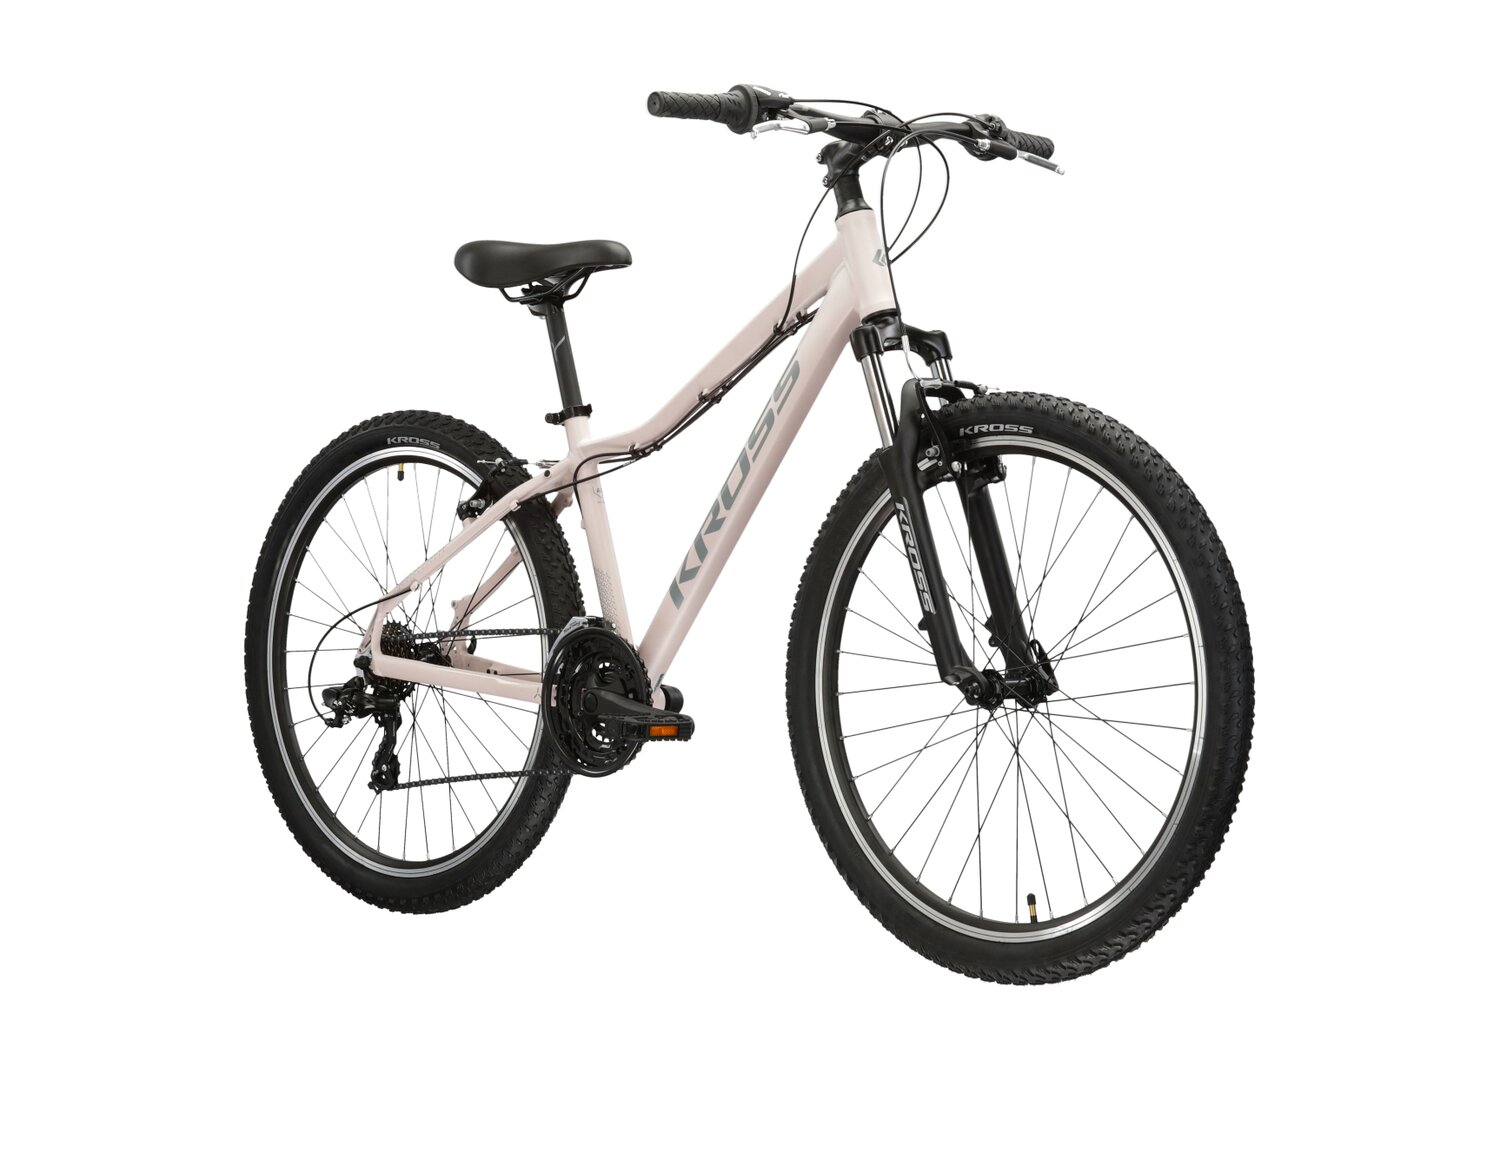 Damski rower górski MTB Woman Kross Lea 1.0 na aluminiowej ramie w kolorze różowym wyposażony w osprzęt Shimano 